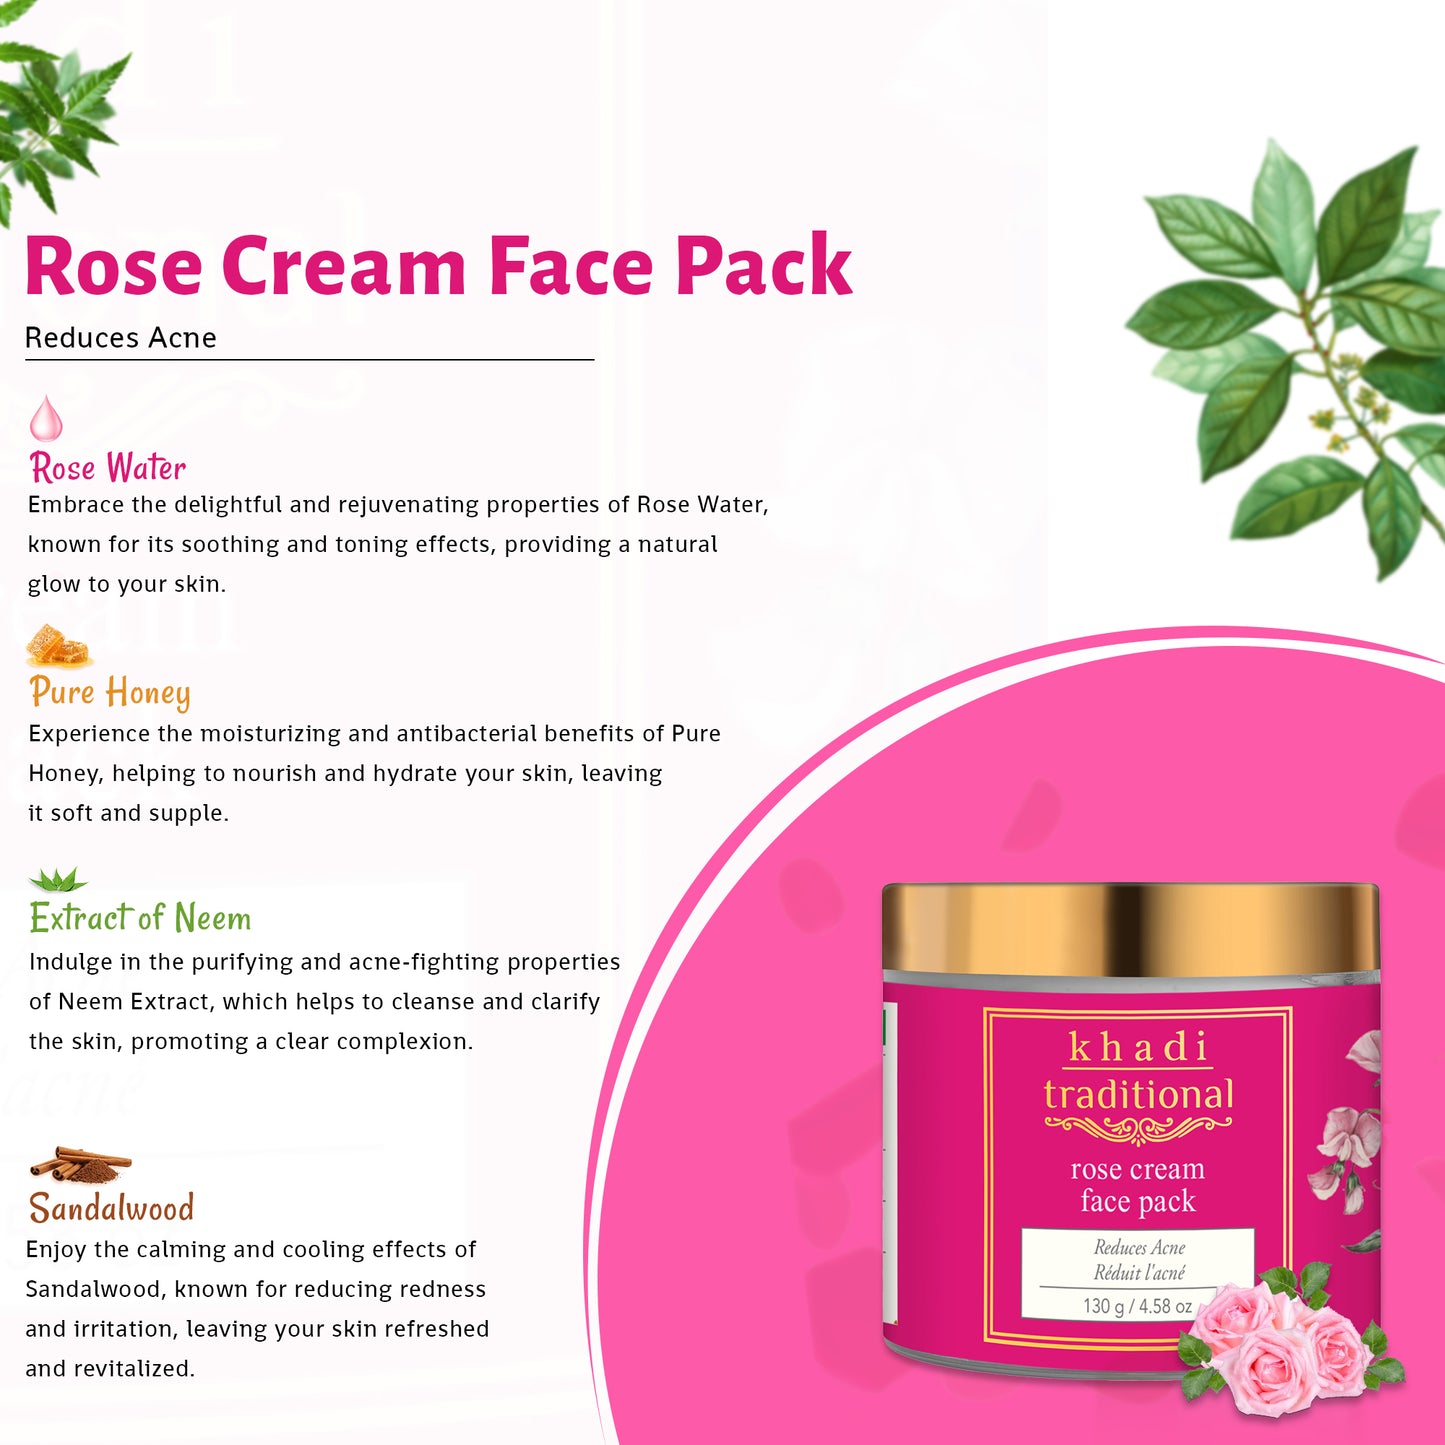 Rose Cream Face Pack